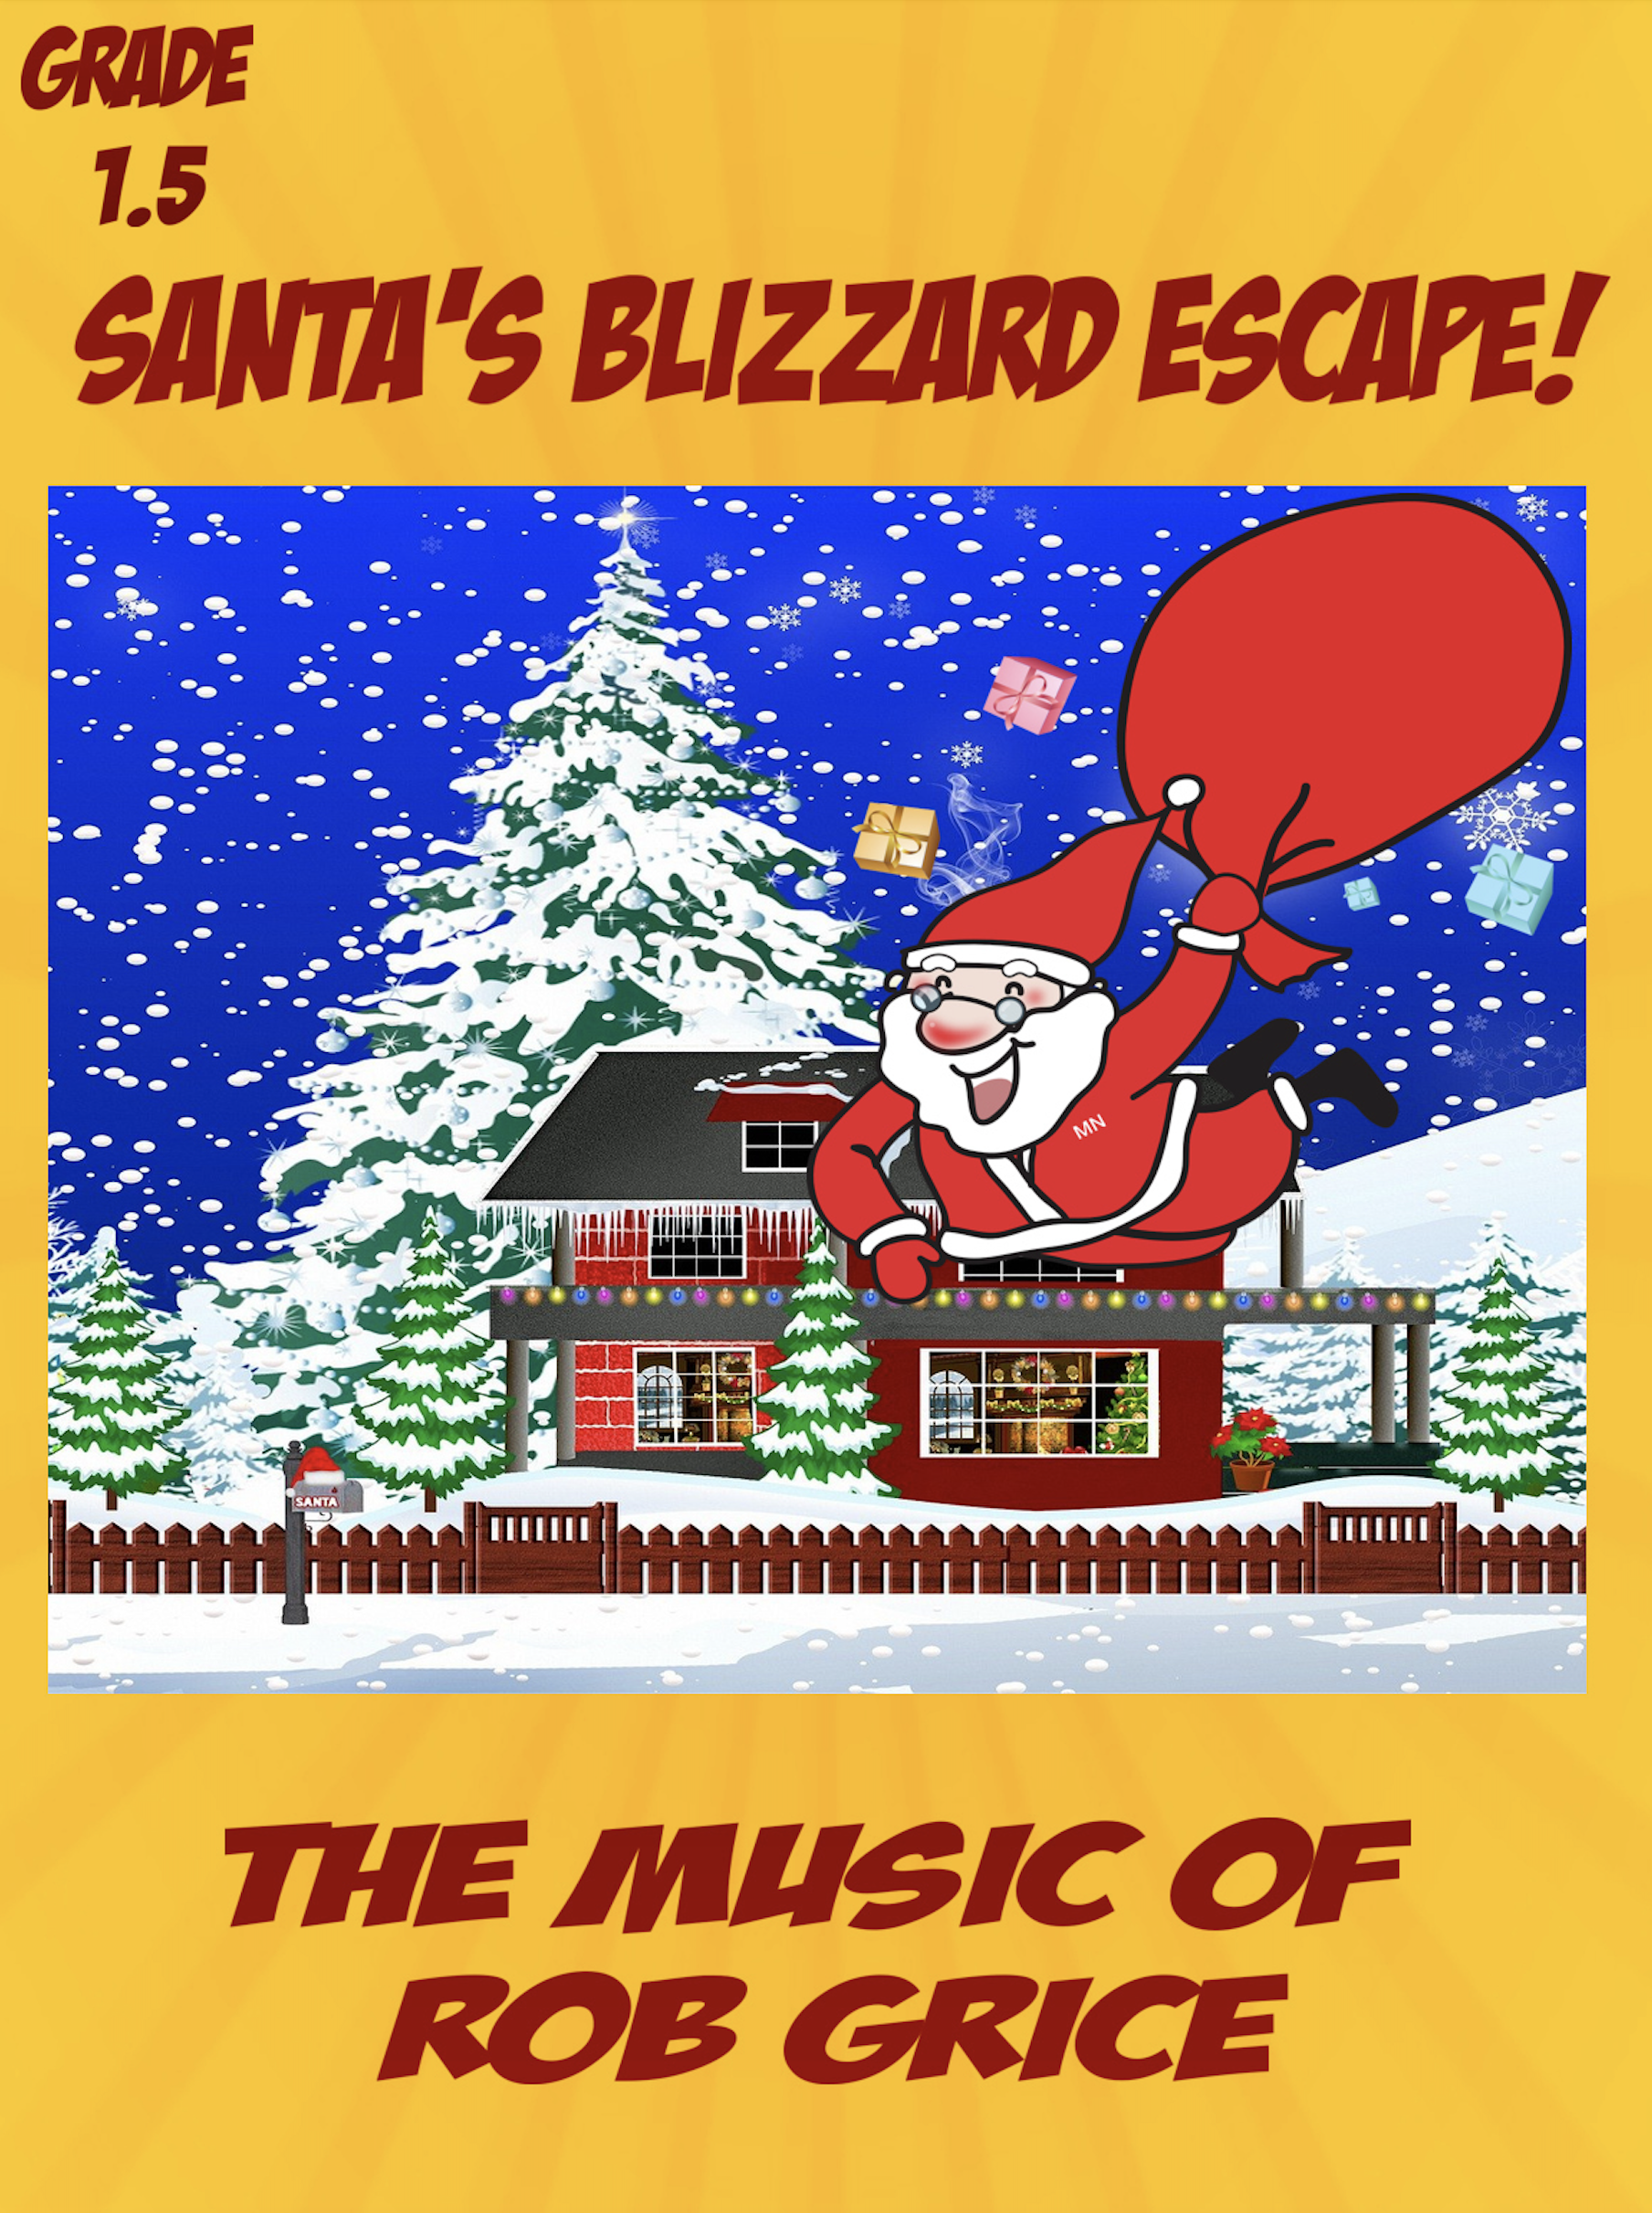 Santa's Blizzard Escape by Rob Grice